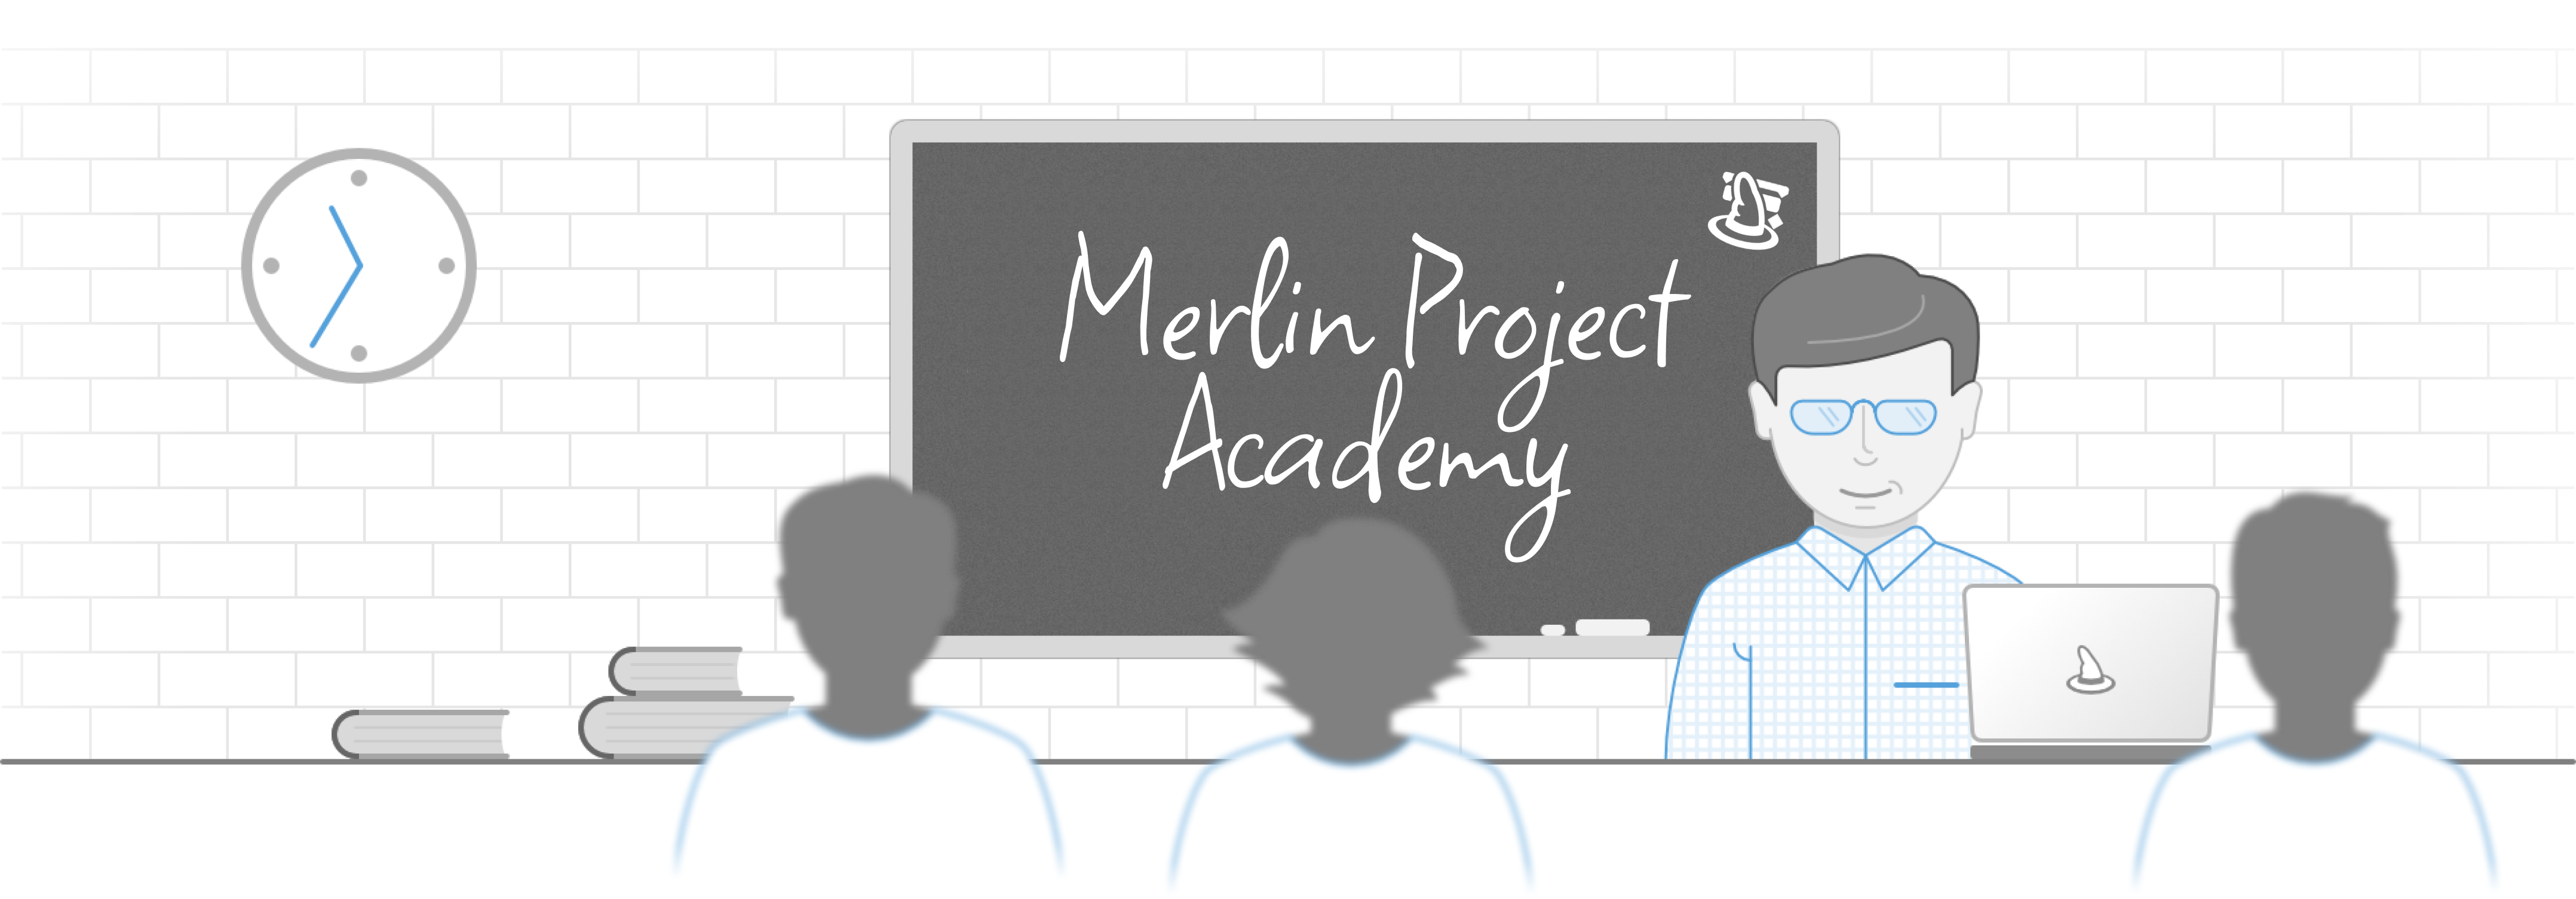 Bienvenido a la Academia de Merlin Project